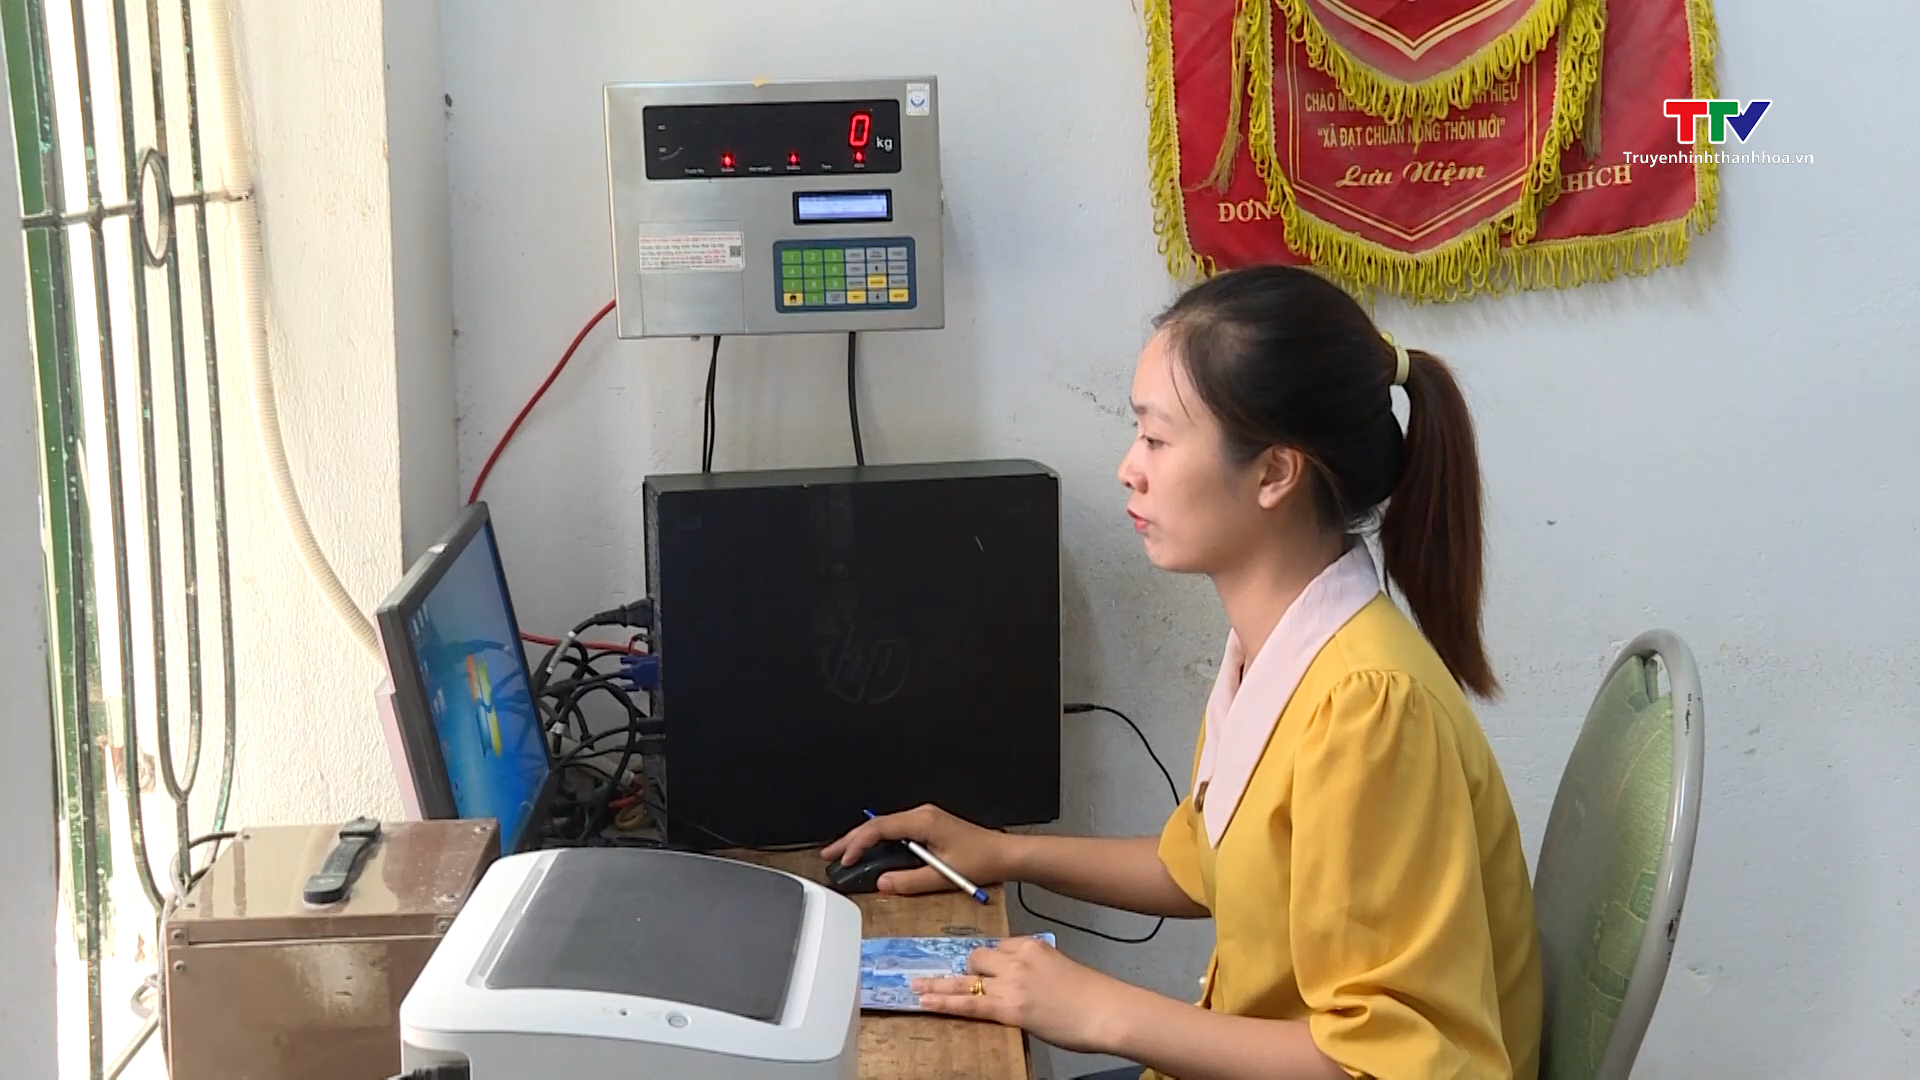 Huyện Yên Định lắp đặt camera và trạm cân kiểm soát tải trọng- Ảnh 1.